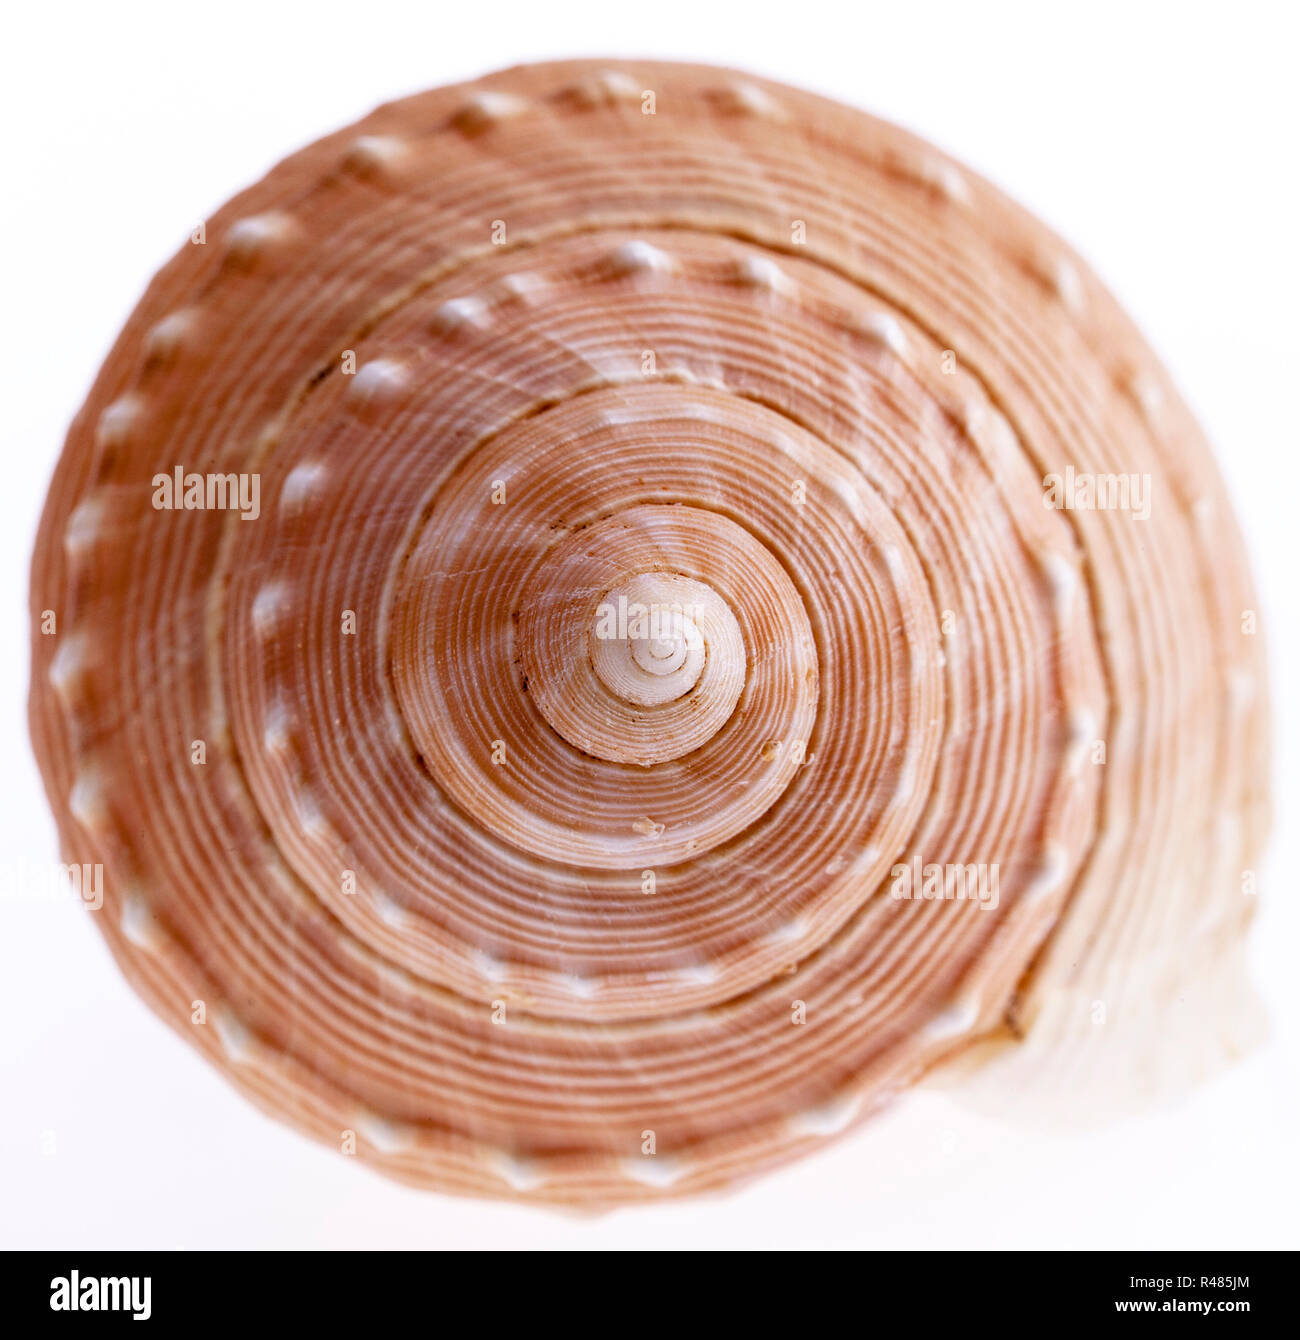 seashell of marine snail isolated on white background, close up Stock Photo